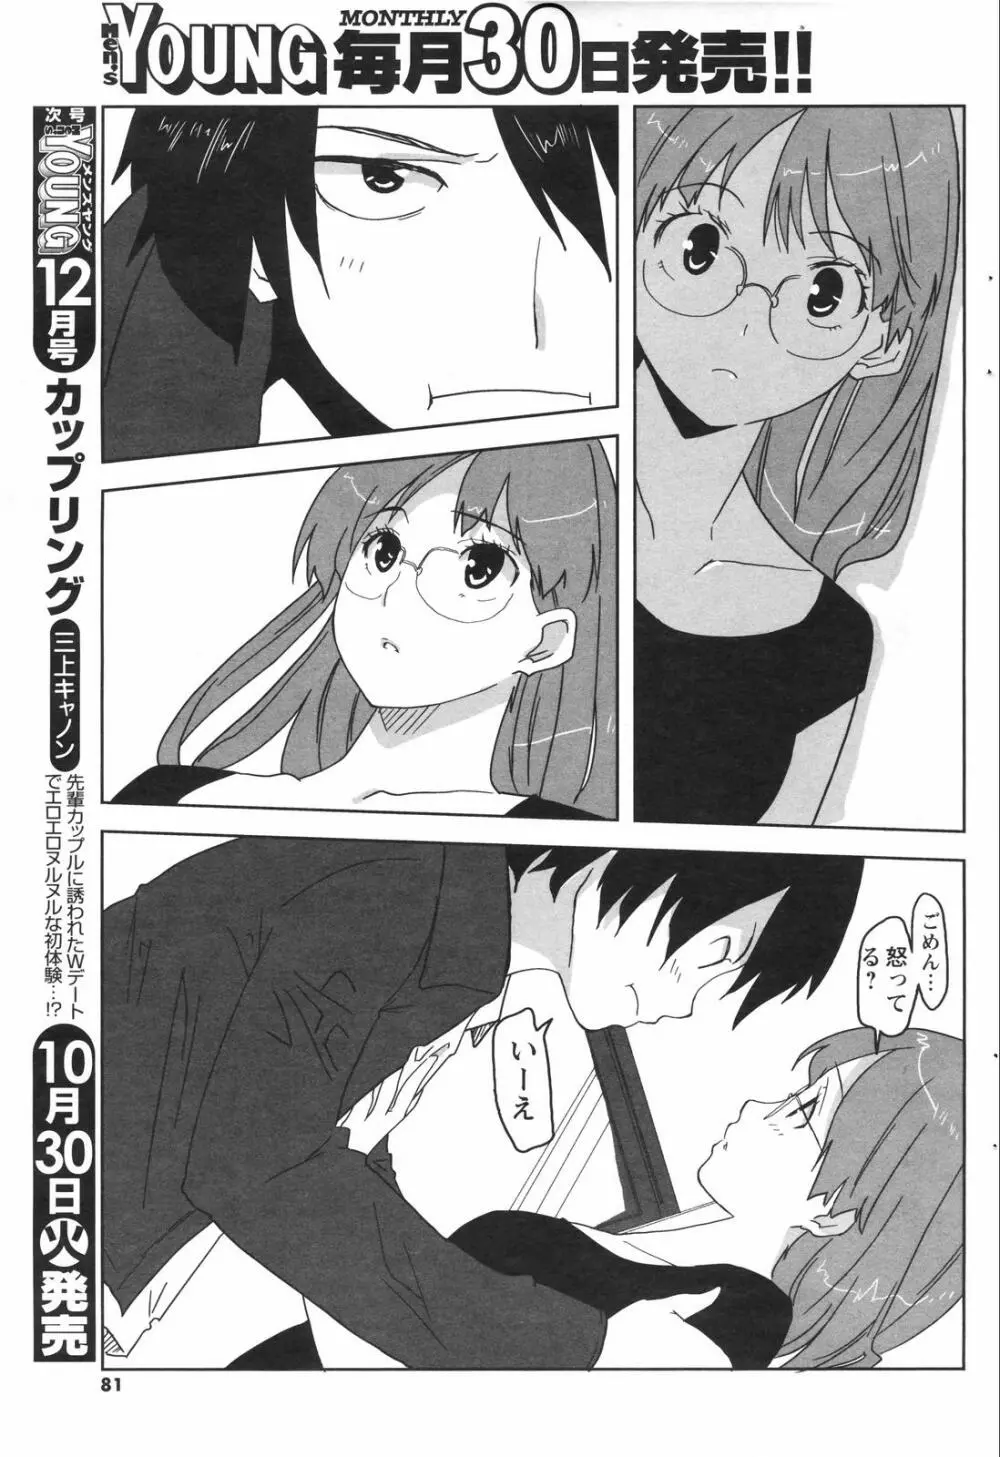 メンズヤングスペシャルIKAZUCHI雷 Vol.4 2007年12月号増刊 81ページ